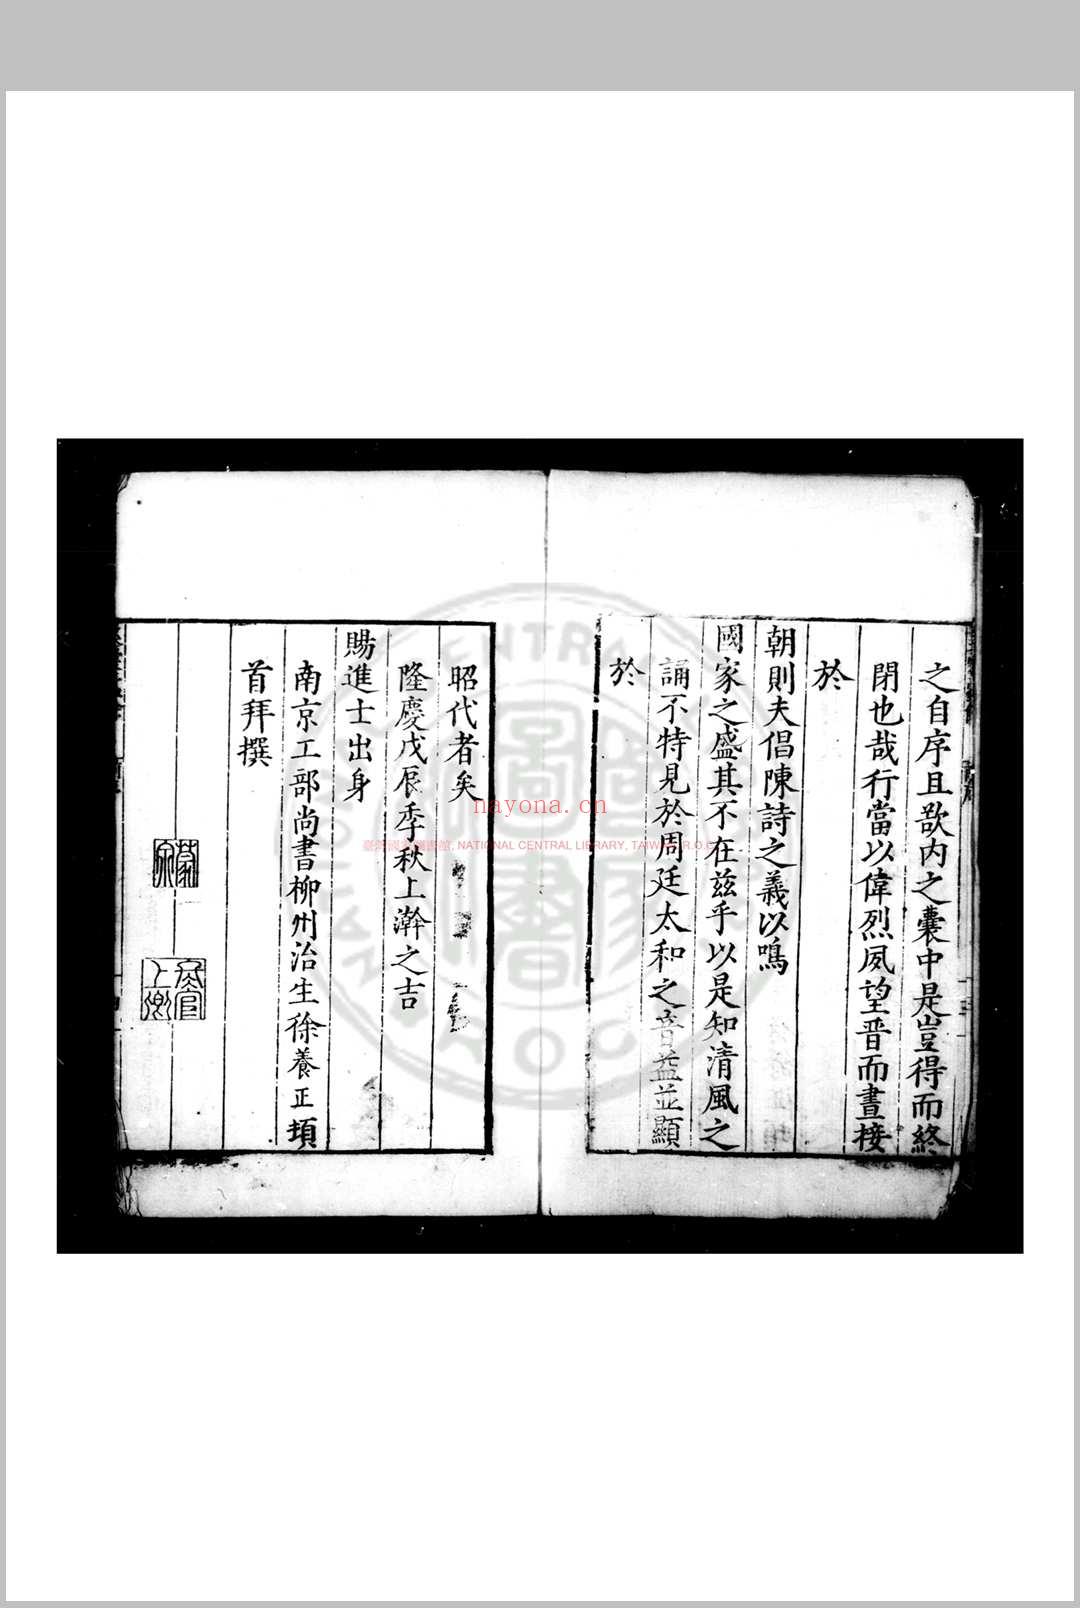 奚囊蠹余 (明)张瀚撰 明隆庆三年(1569)张佳胤等广西刊本